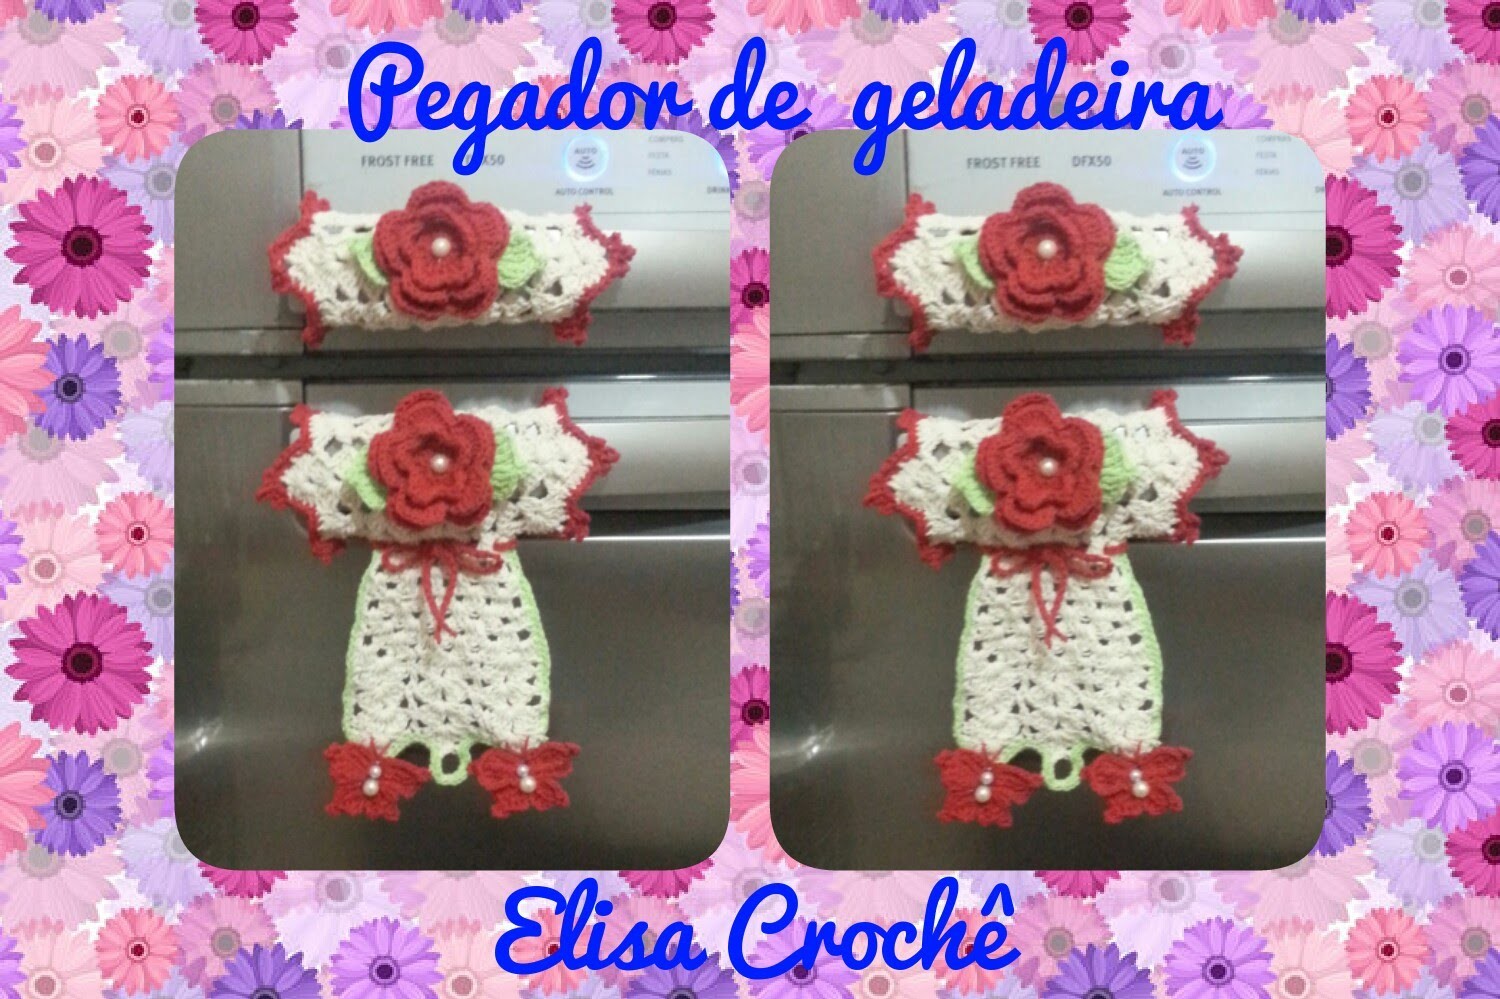 Versao canhotos : Pegador de geladeira borboletas em crochê ( 1ª parte ) # Elisa Crochê